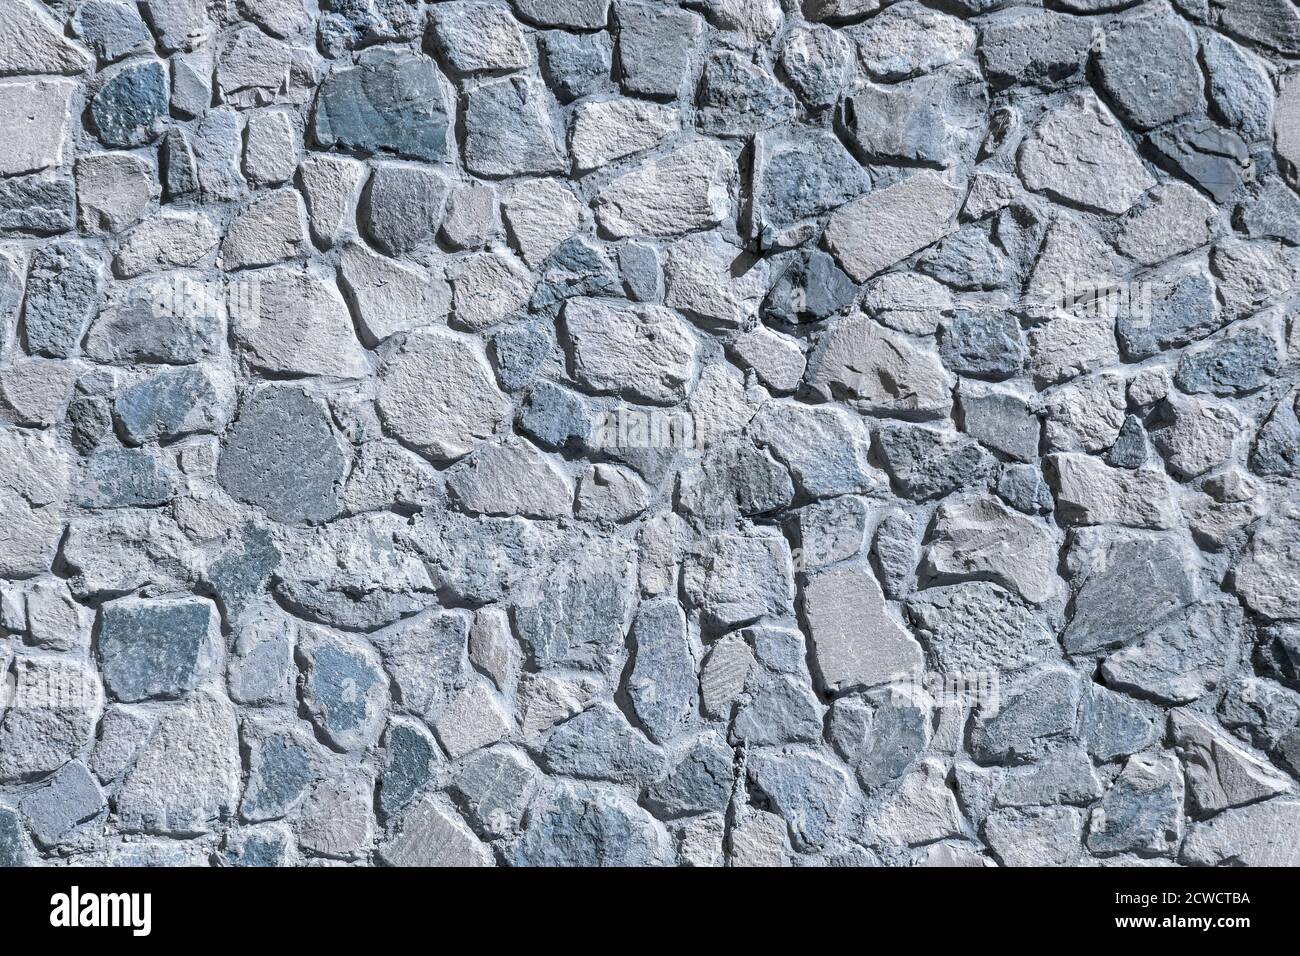 Un mur inhabituel de bleu de pierre sauvage. Arrière-plan. Photo de haute qualité Banque D'Images